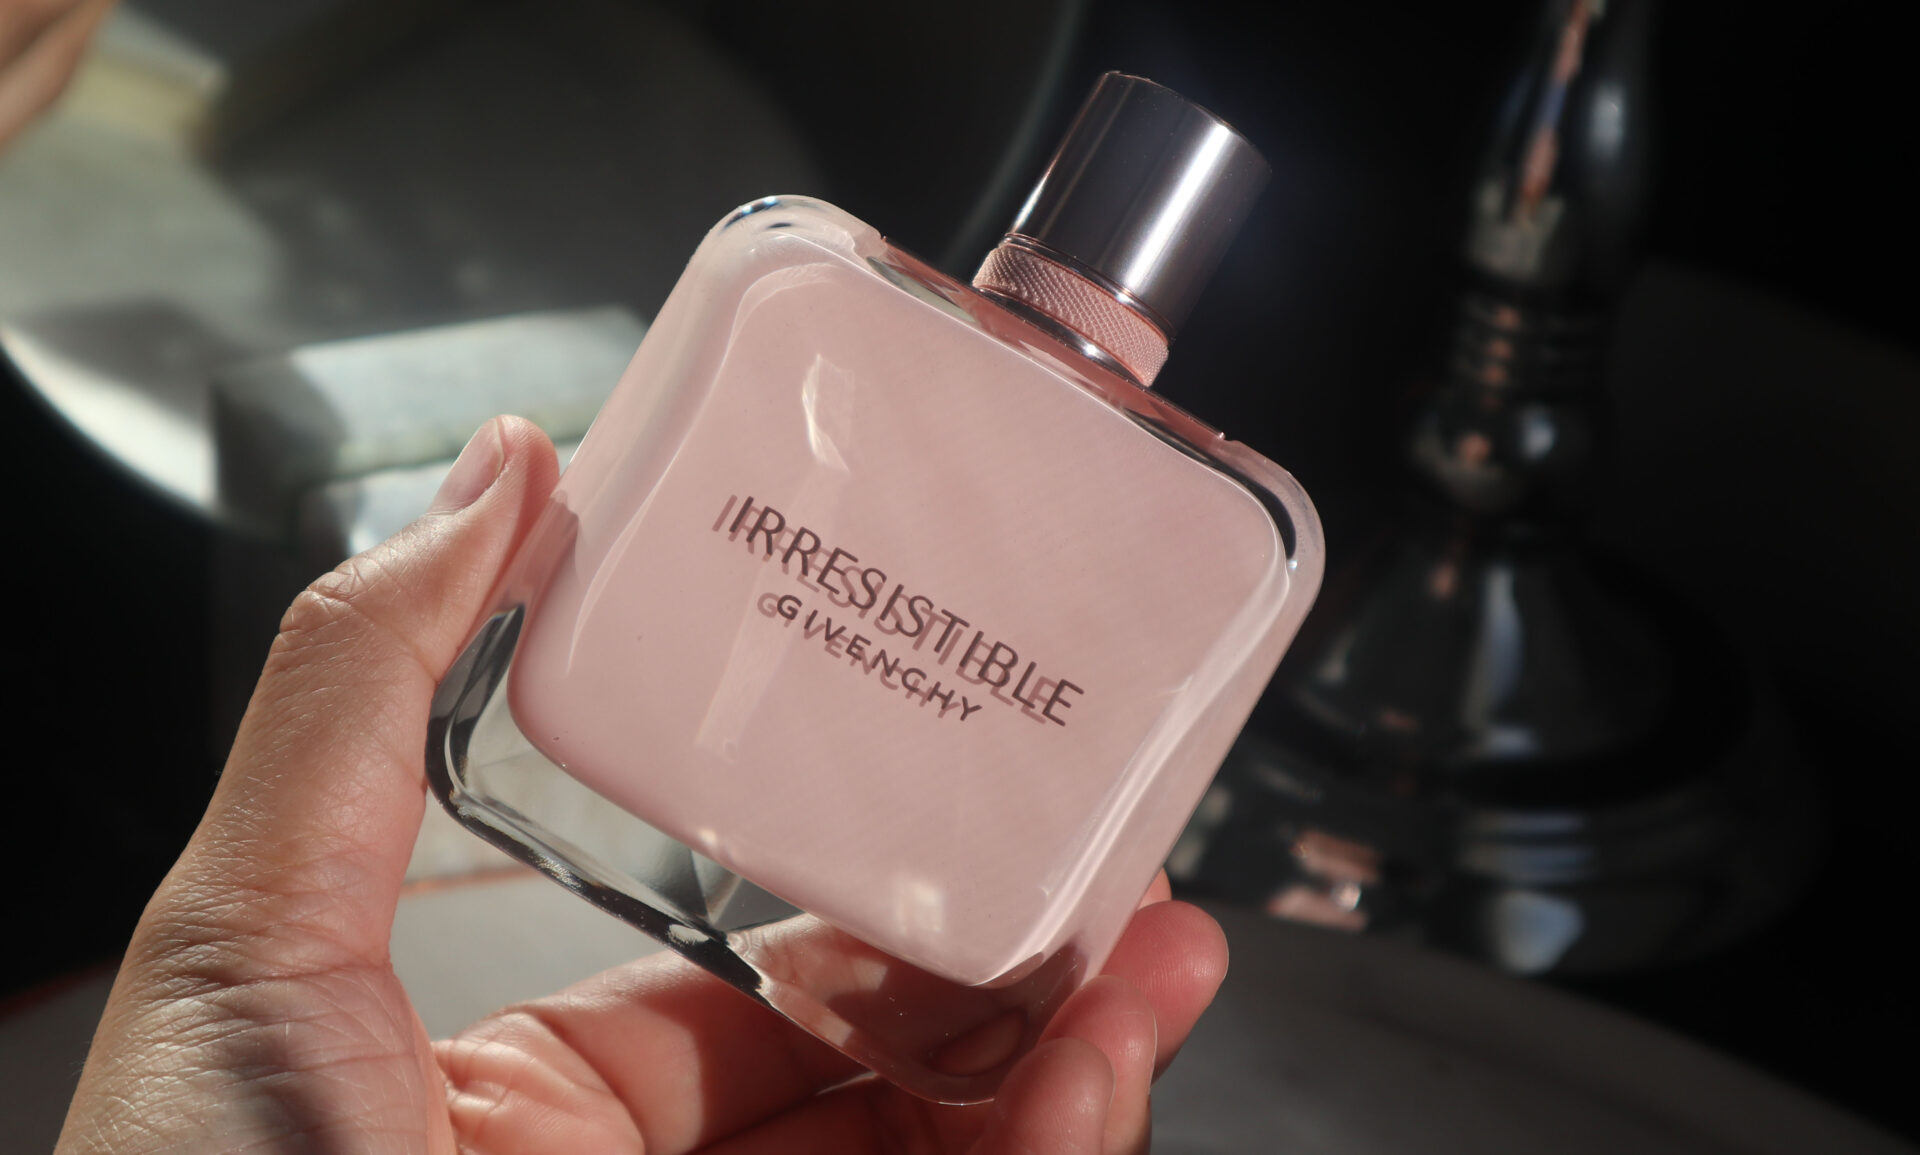 Givenchy Irresistible Eau de Parfum Rose Velvet Review - The Velvet Life